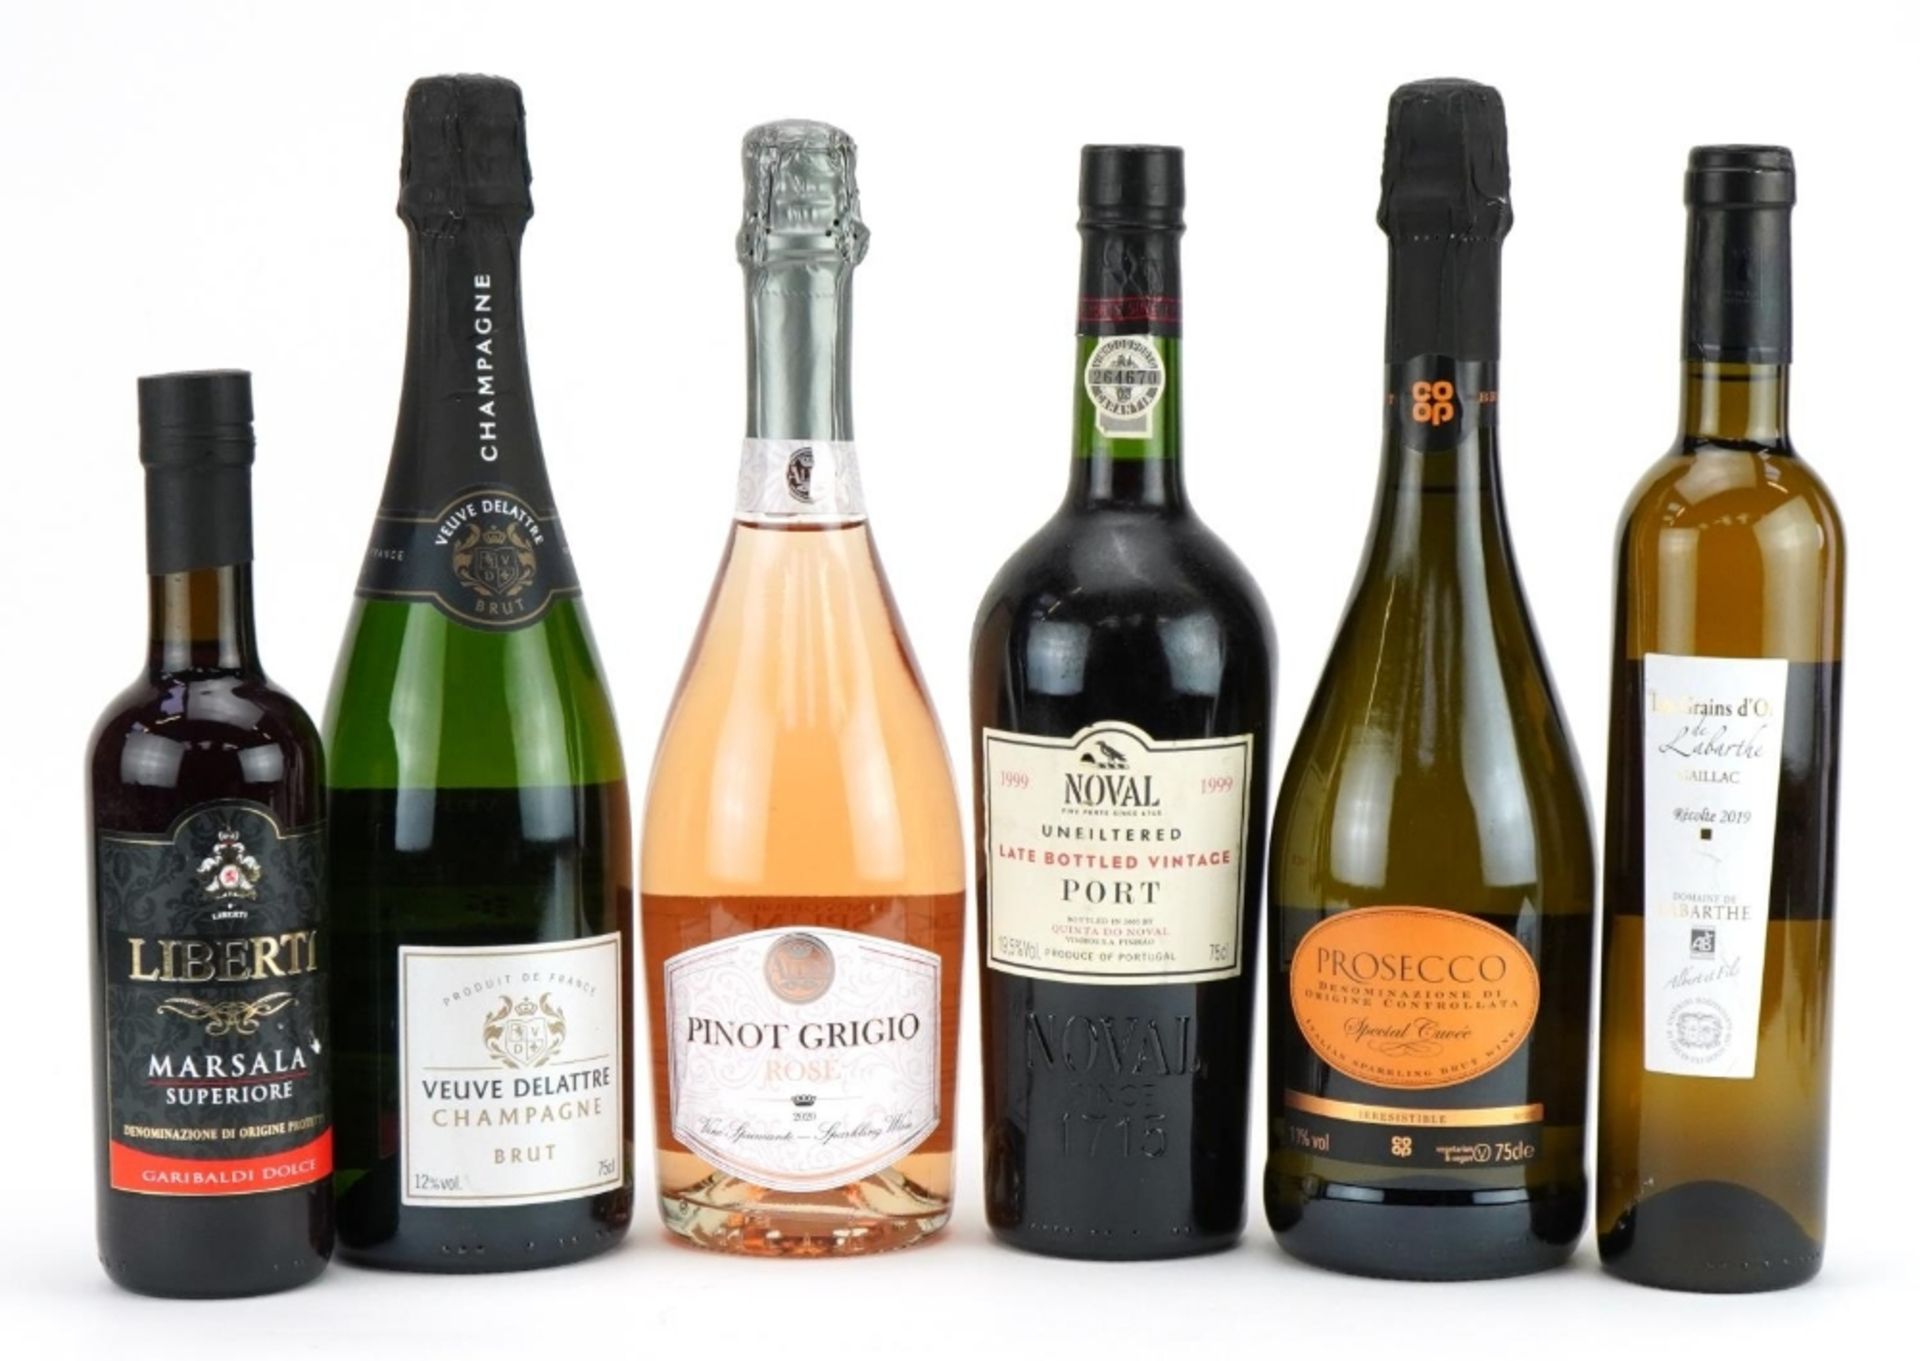 Six bottles of alcohol including 1999 Noval late bottled vintage port, Veuve Delattre Champagne